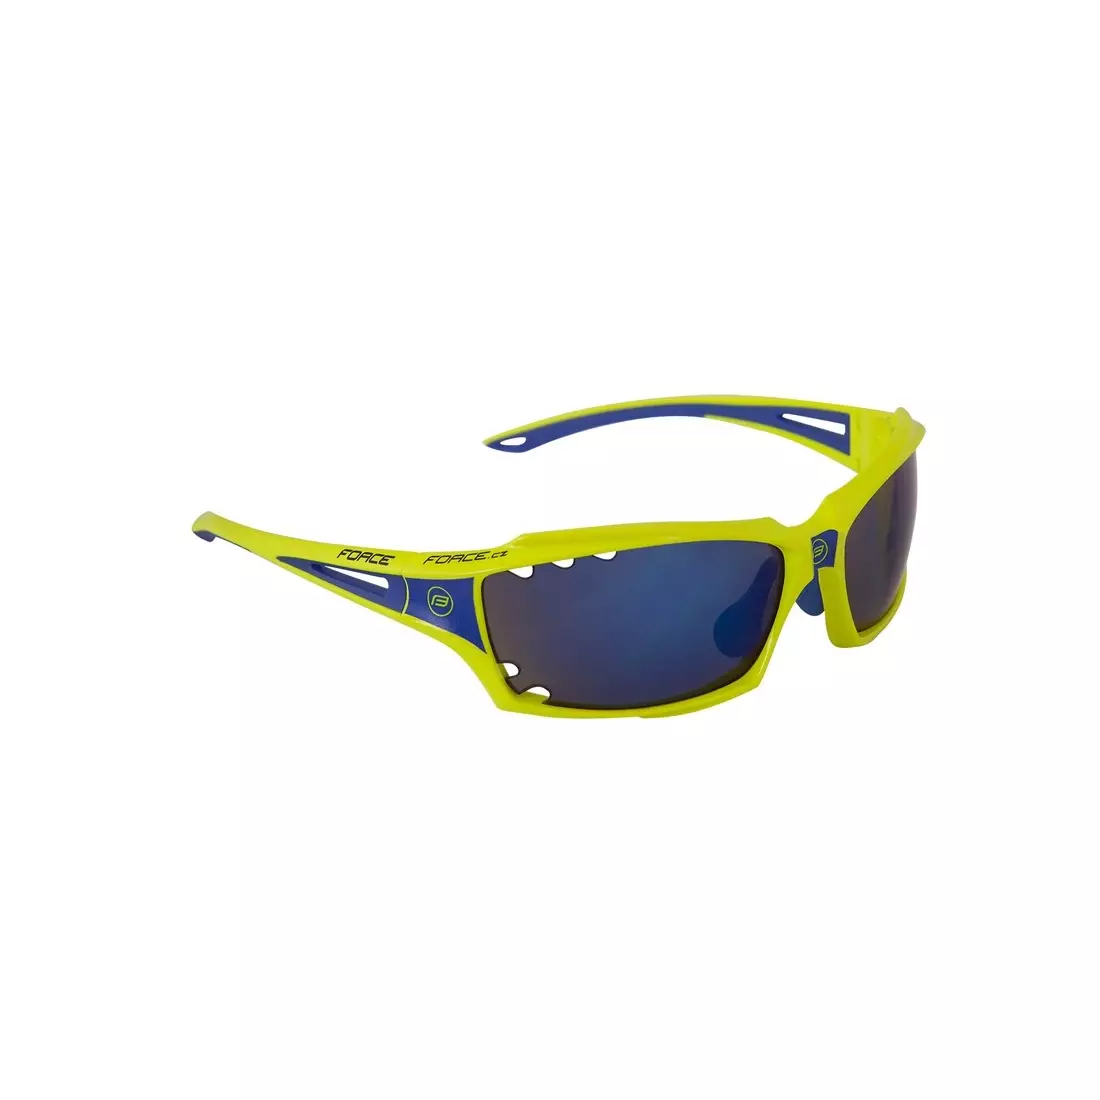 FORCE VISION Cyklistické/športové okuliare fluo 90973 vymeniteľné sklá